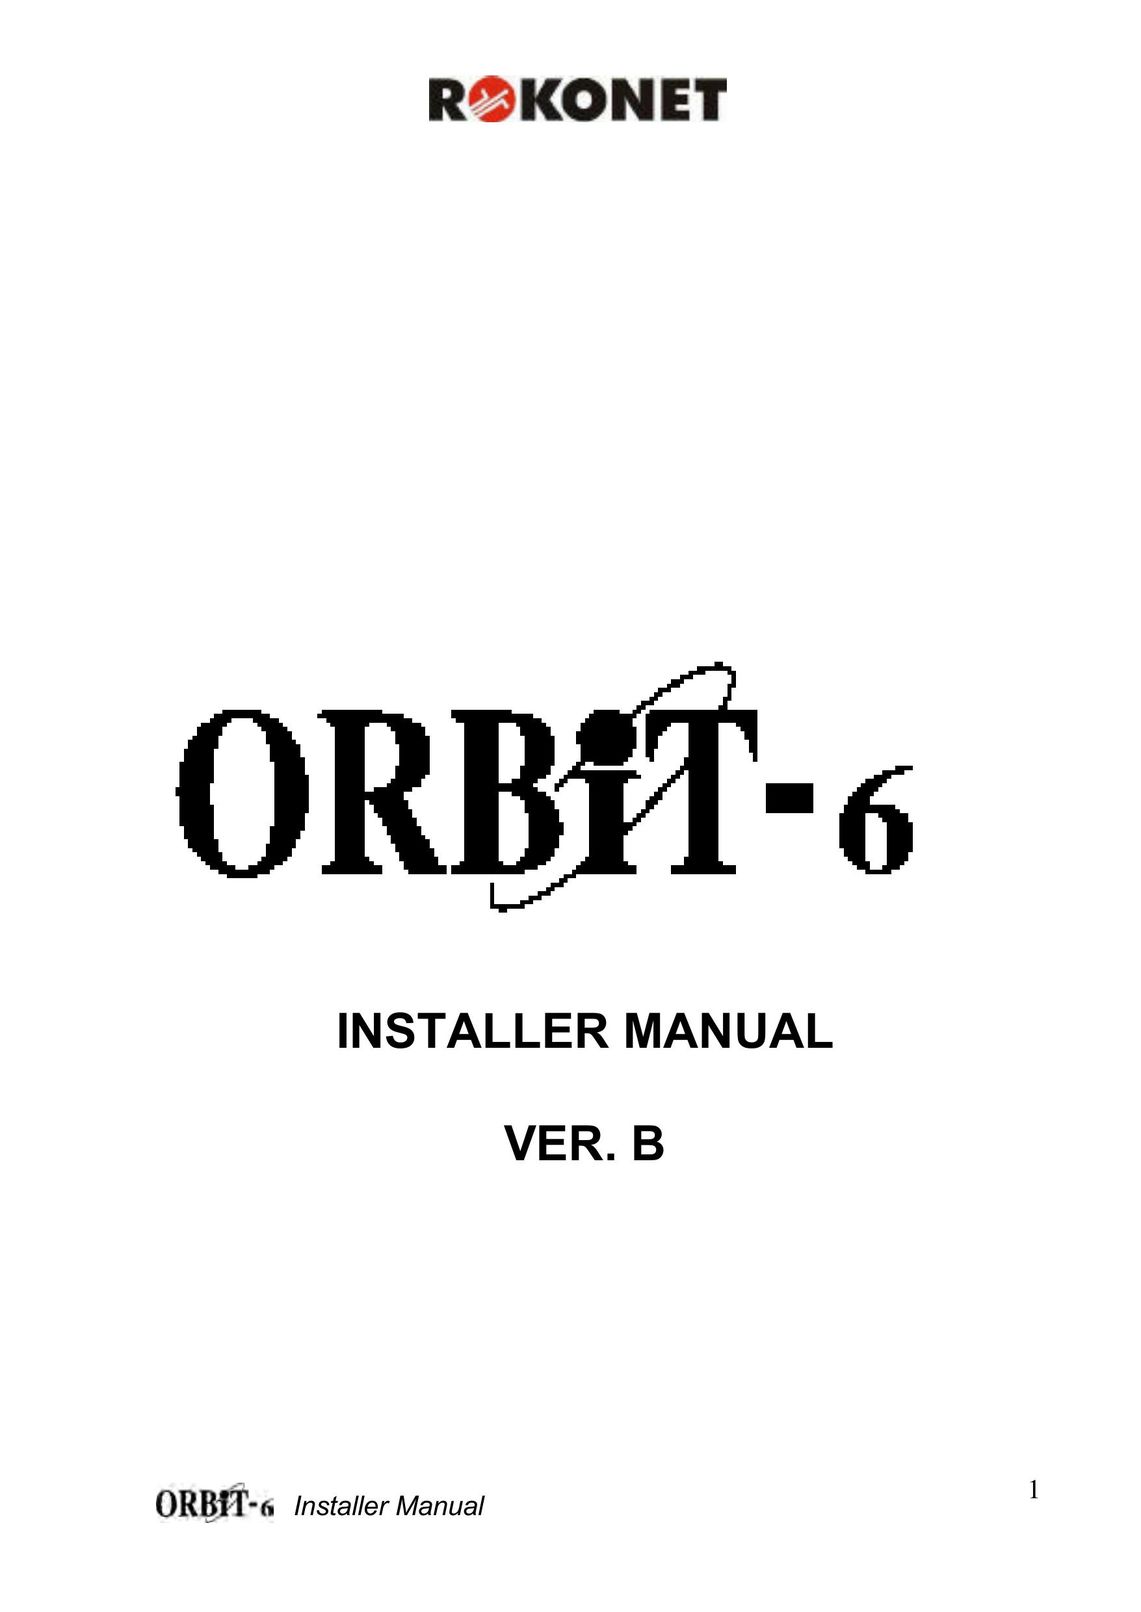 Orbit Manufacturing ORBIT-6 RP-206 Smoke Alarm User Manual